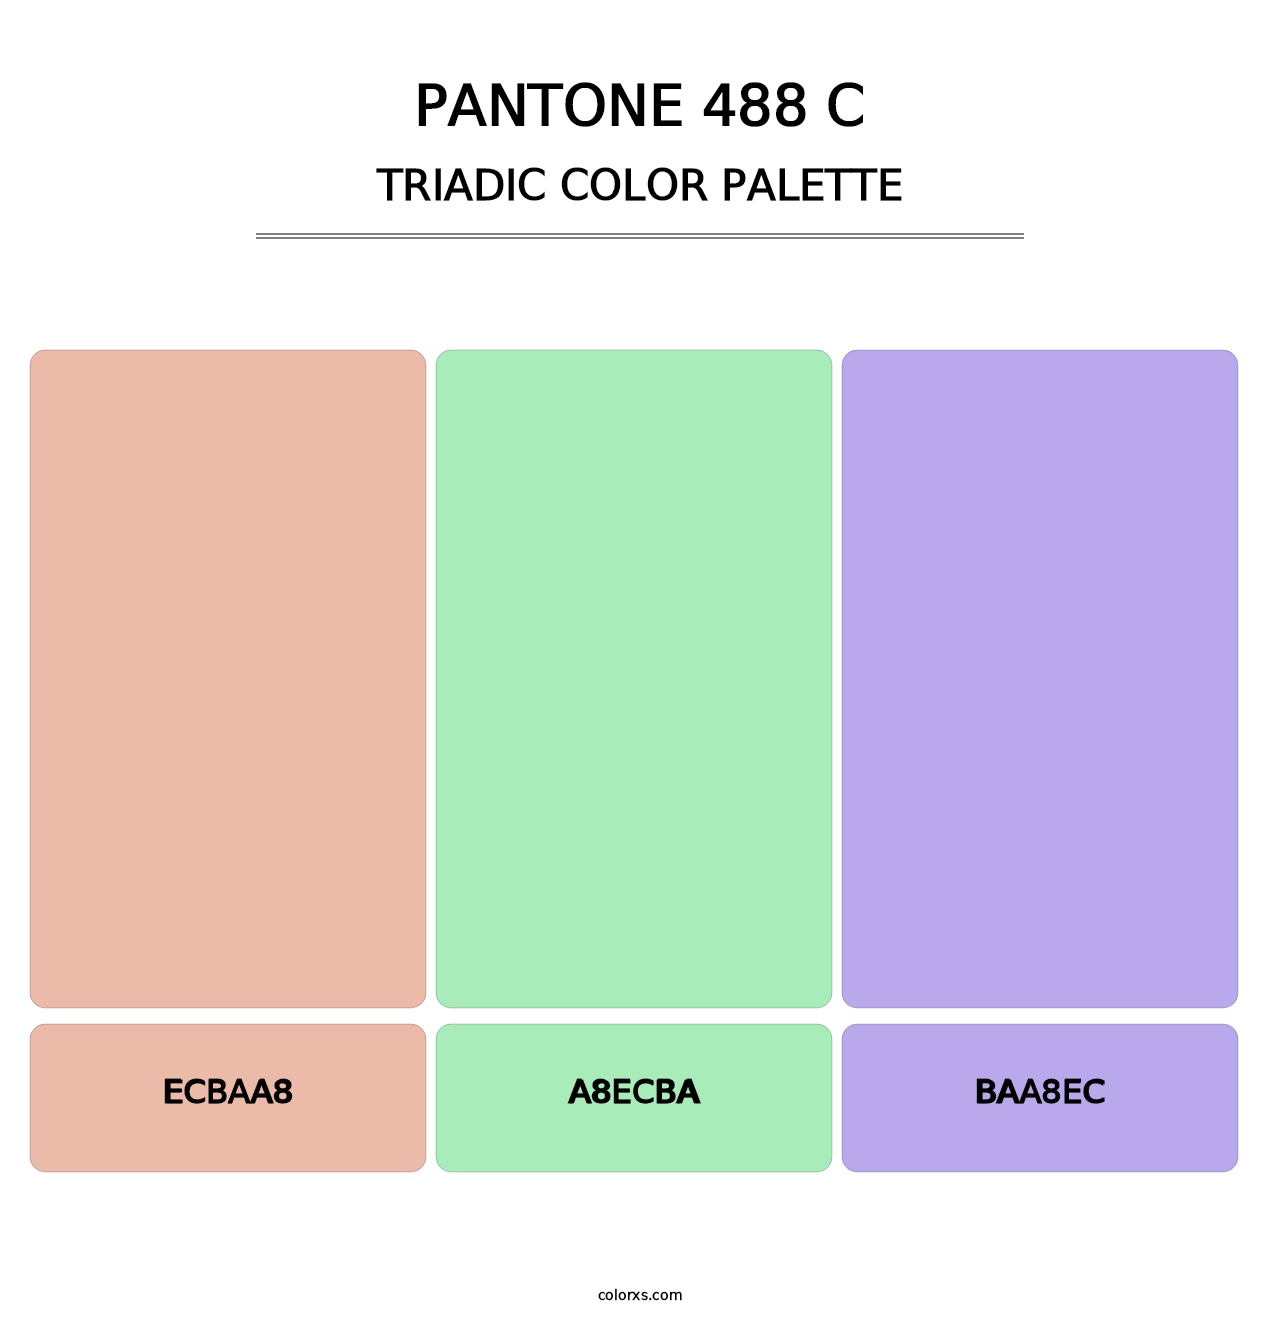 PANTONE 488 C - Triadic Color Palette